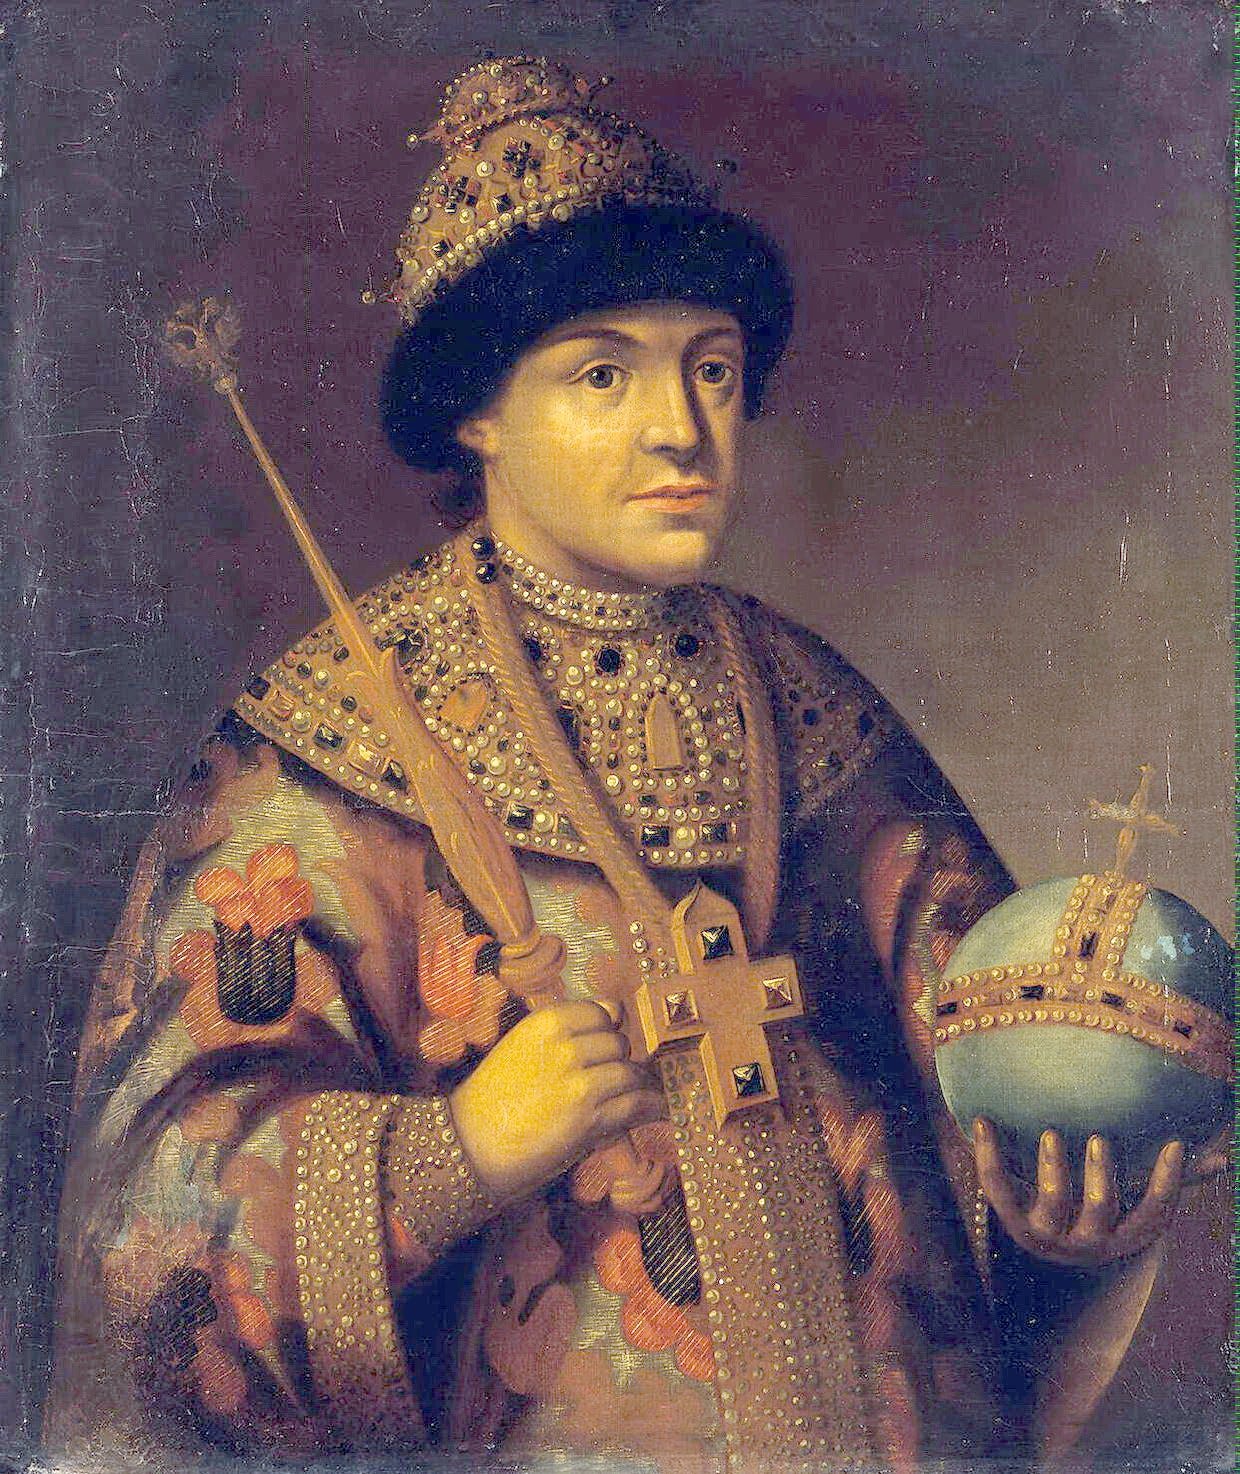 Feodor III of Russia - Wikipedia